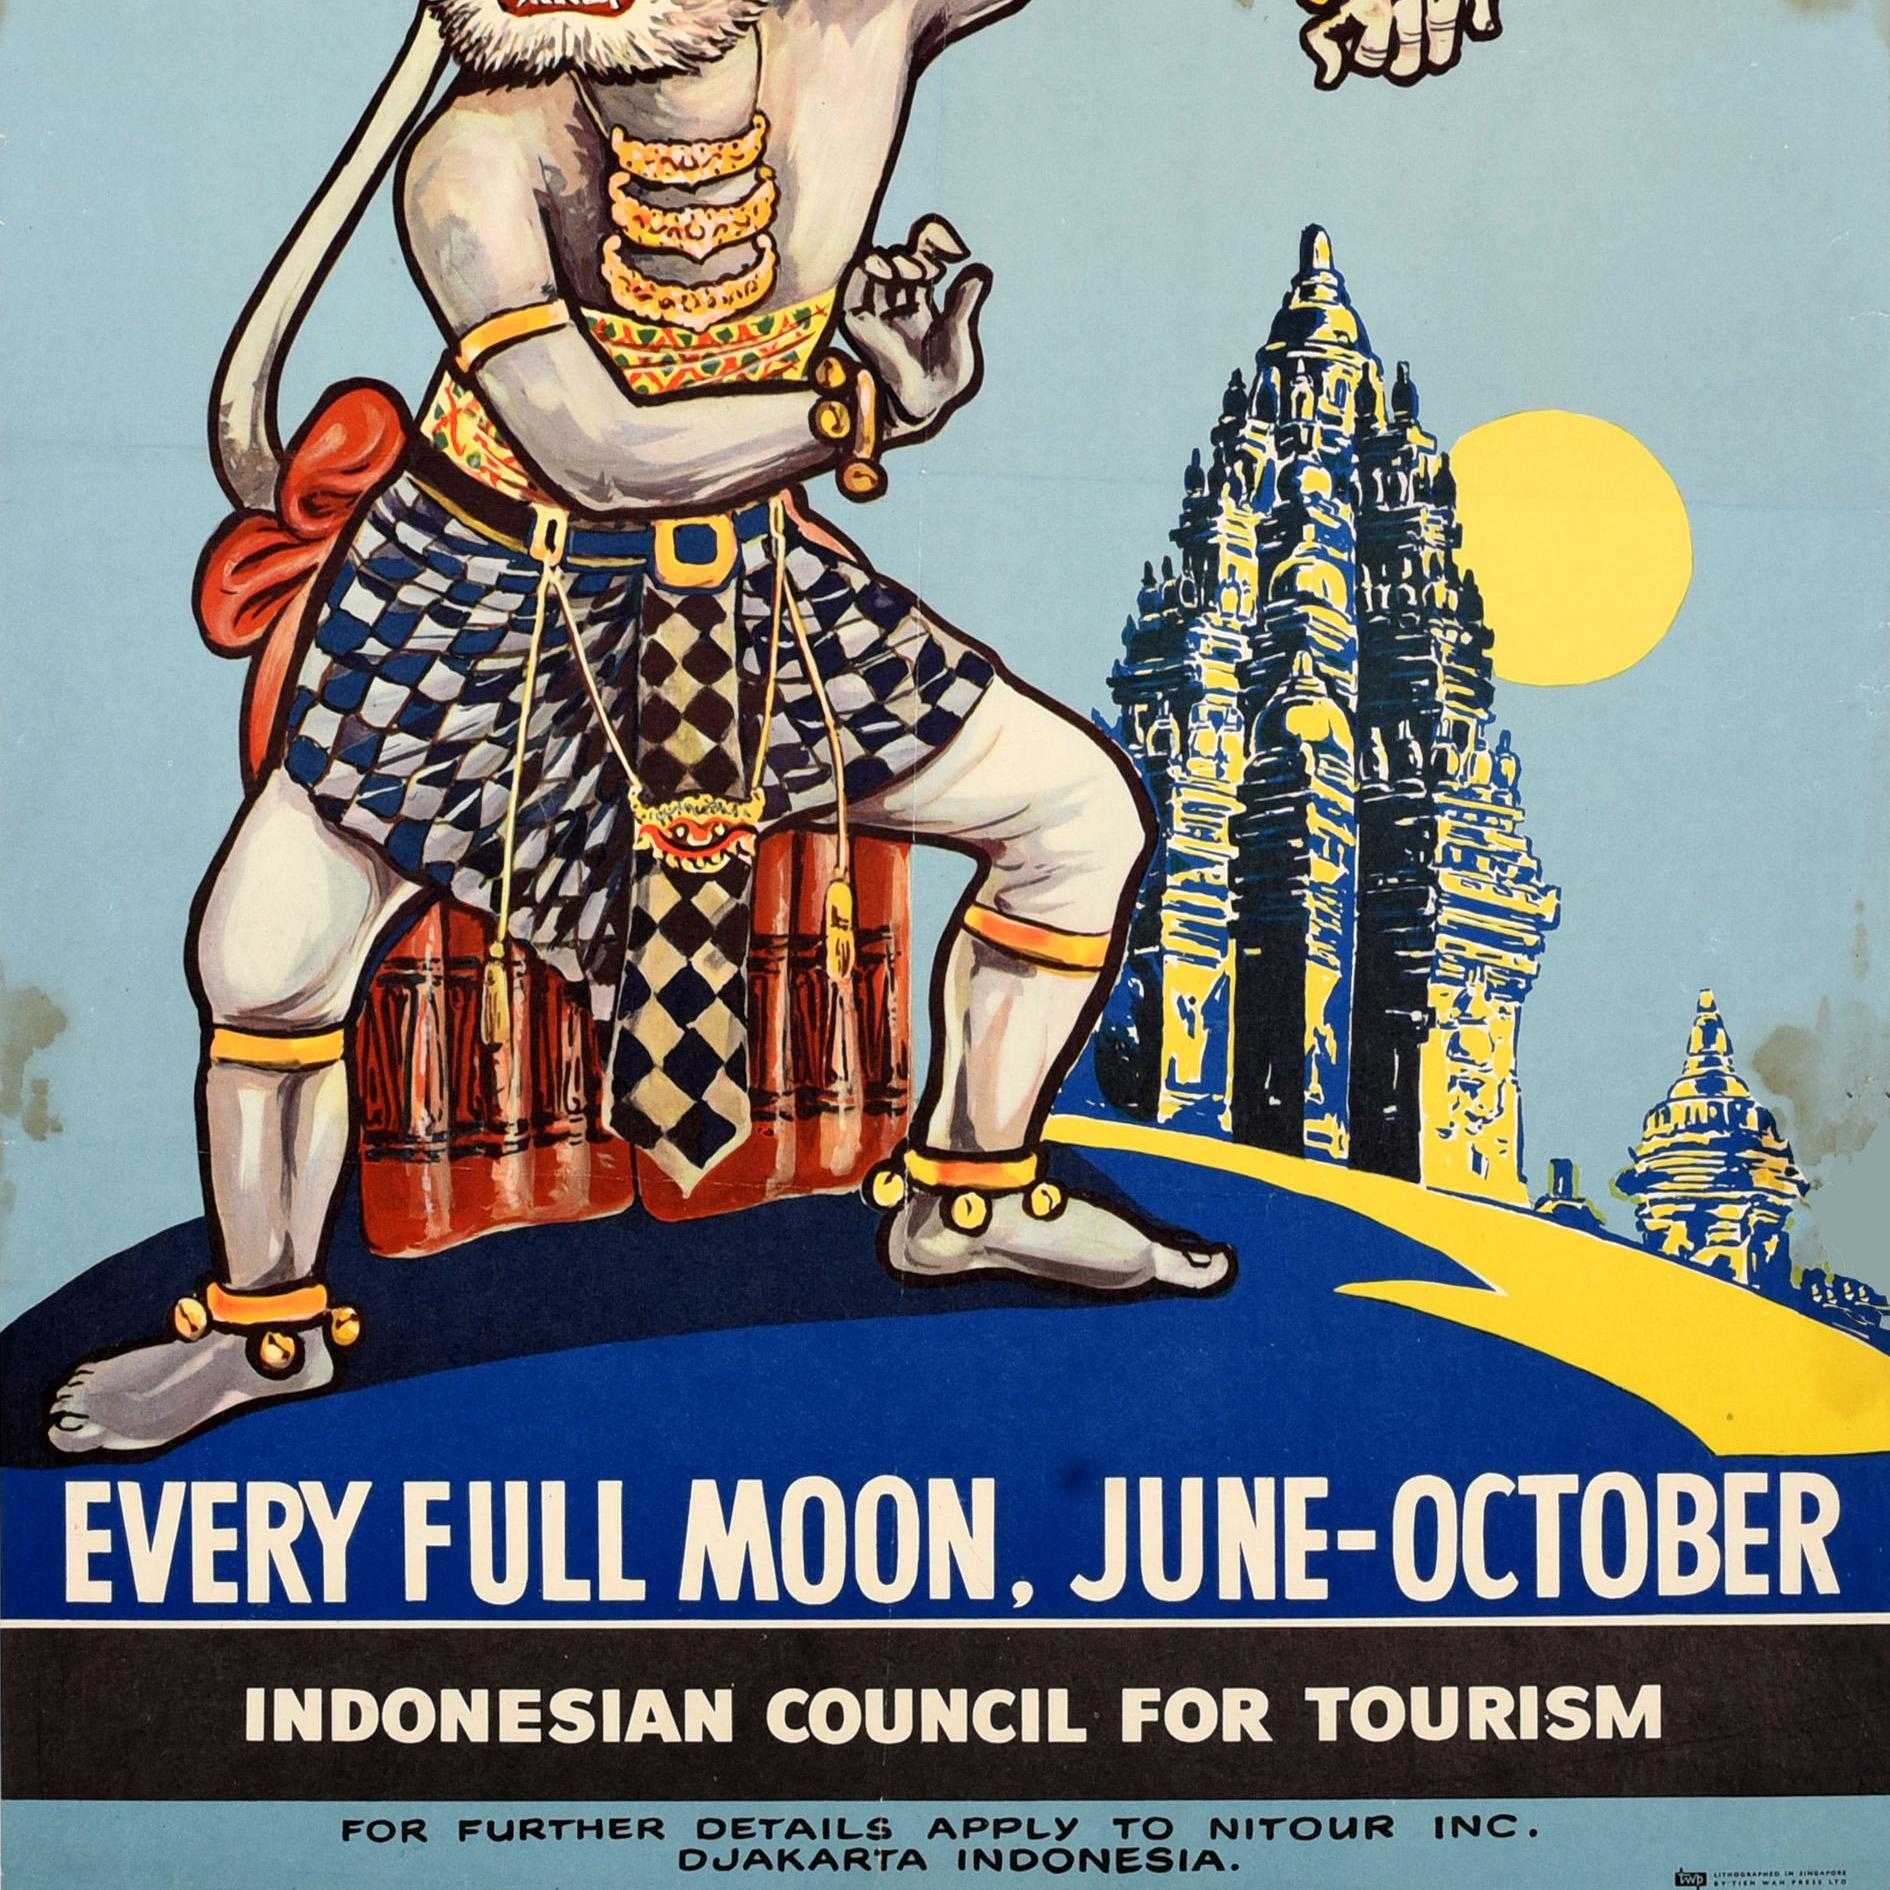 Affiche publicitaire originale pour le festival de ballet Ramayana en Indonésie, qui a lieu chaque année à la pleine lune de juin à octobre. L'affiche présente un spectacle de danse du dieu singe avec un temple ancien et une lune brillante en